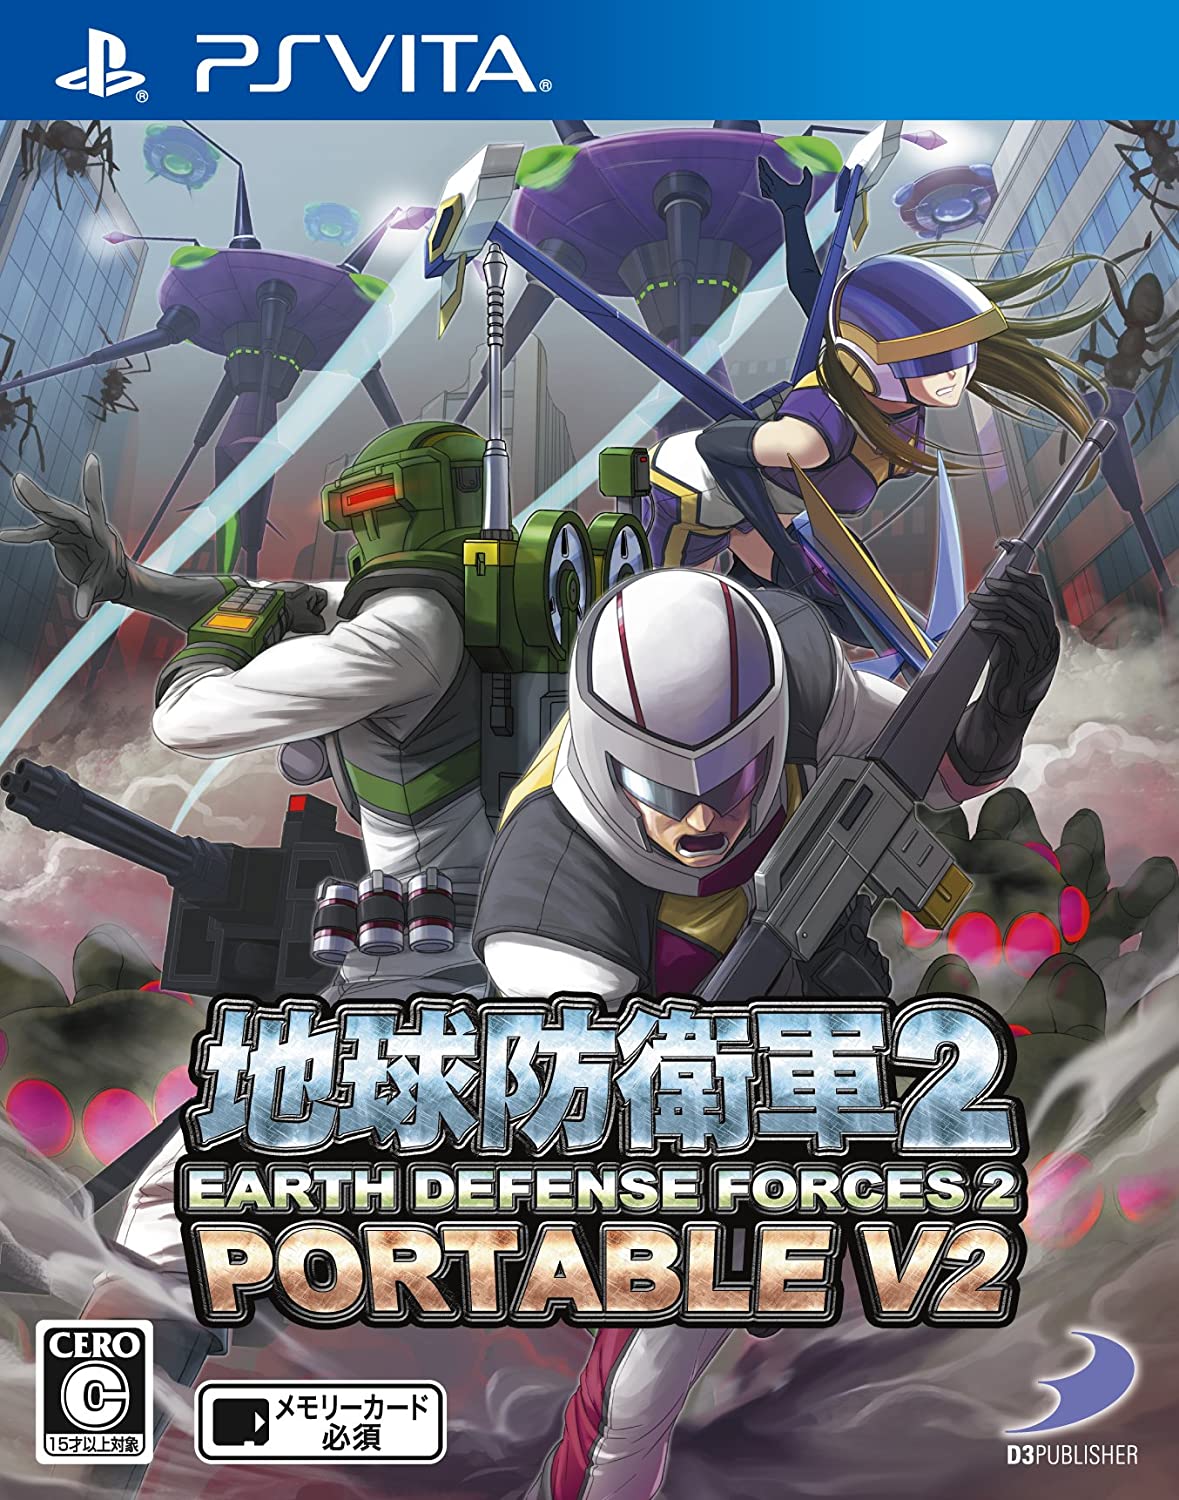 『地球防衛軍2 PORTABLE V2』の攻略・Wikiまとめ【PS Vita】